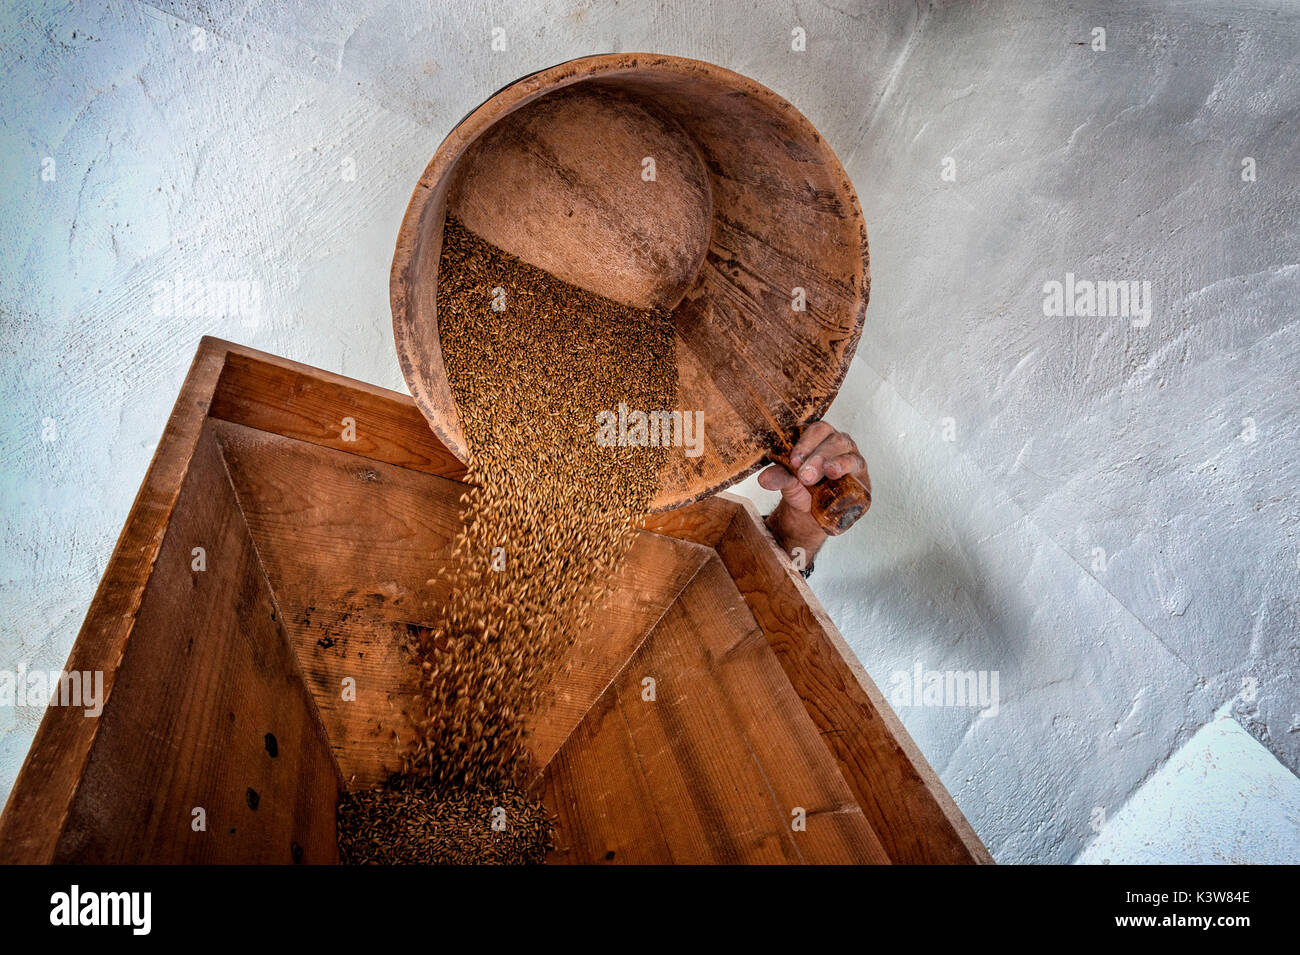 Italia, Trentino Alto Adige, Val di Non,  grinding rye. Stock Photo